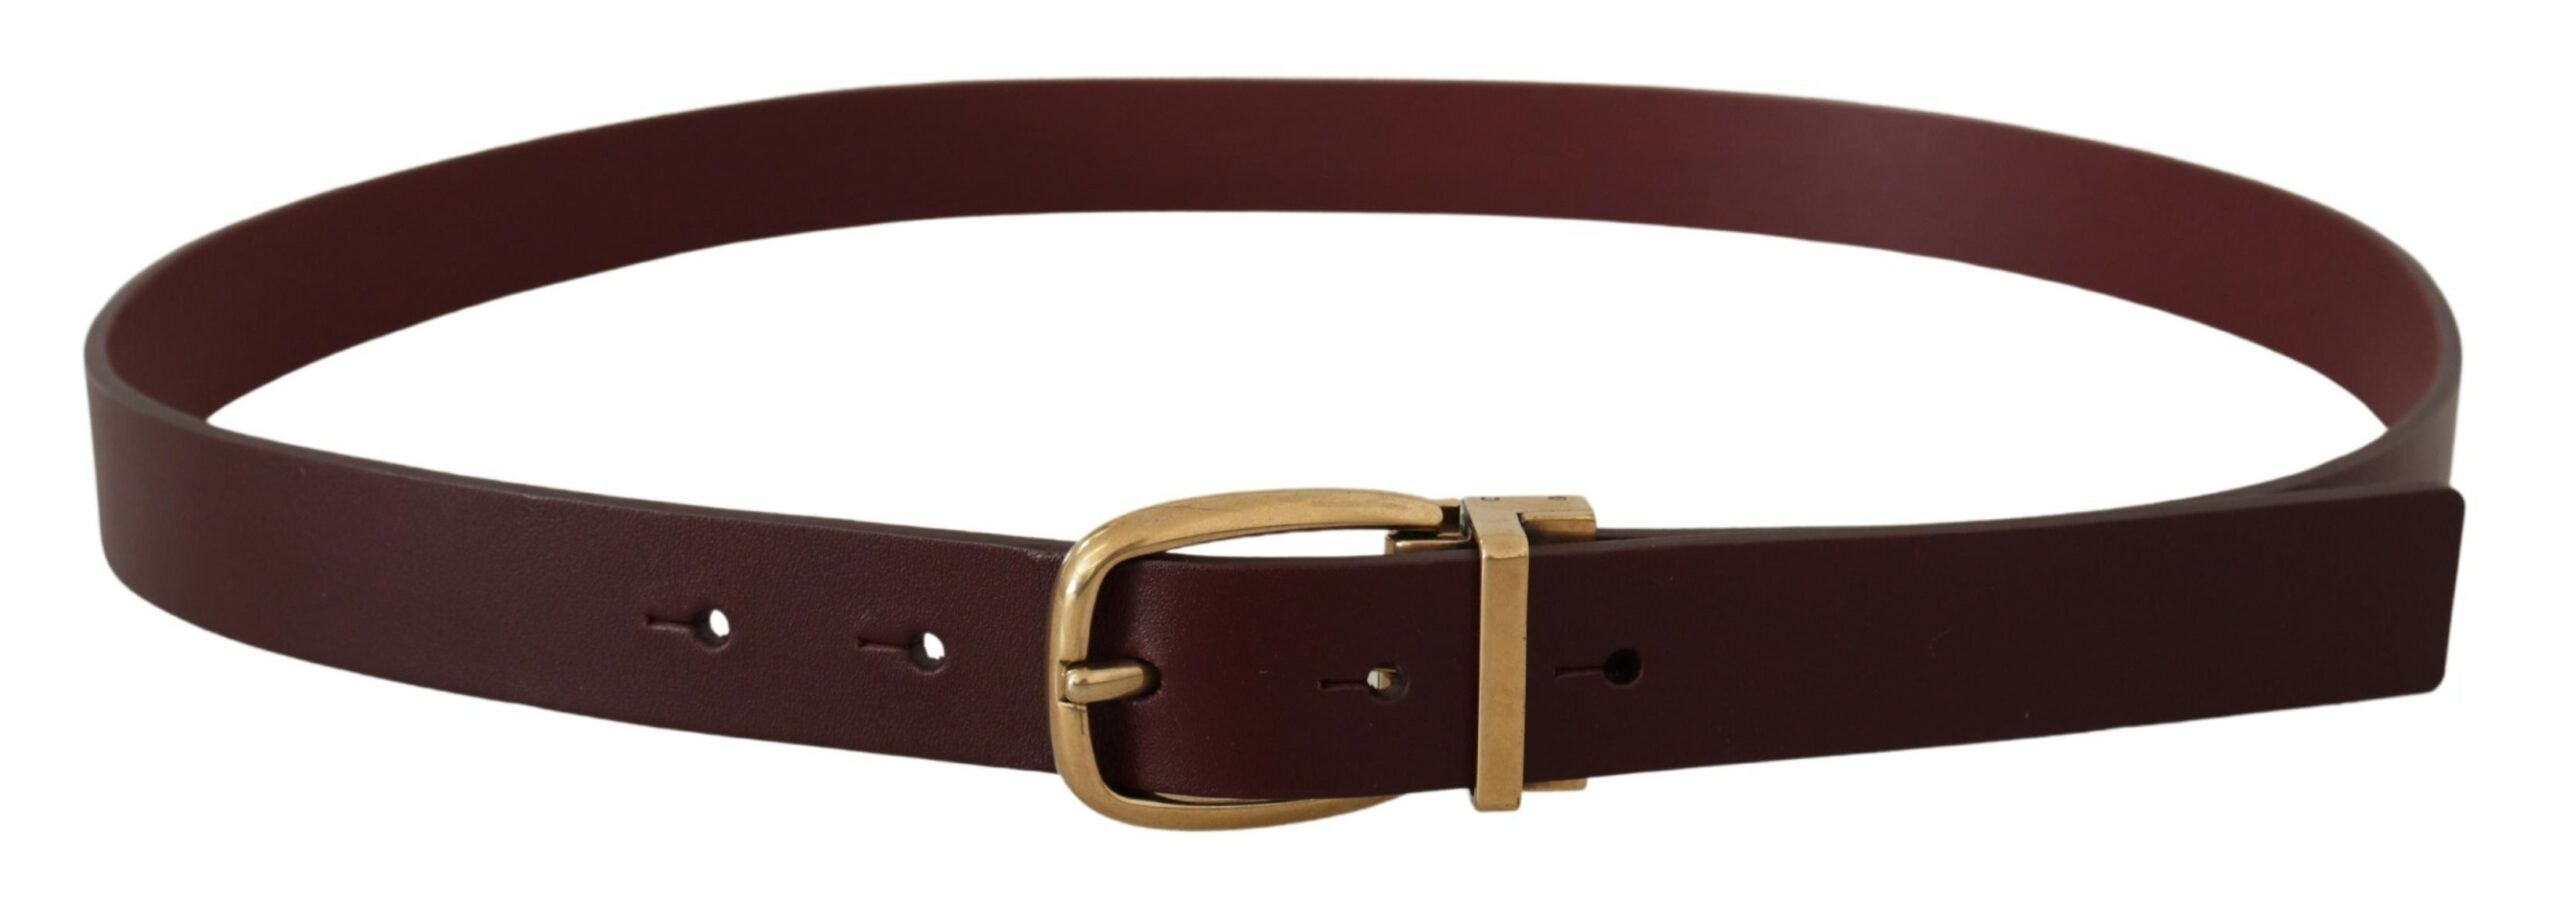 Brown Black Leather Belts for Women , Women's Belts for Jeans , Designer Belts for Women Light Brown / 2.5cm / 1